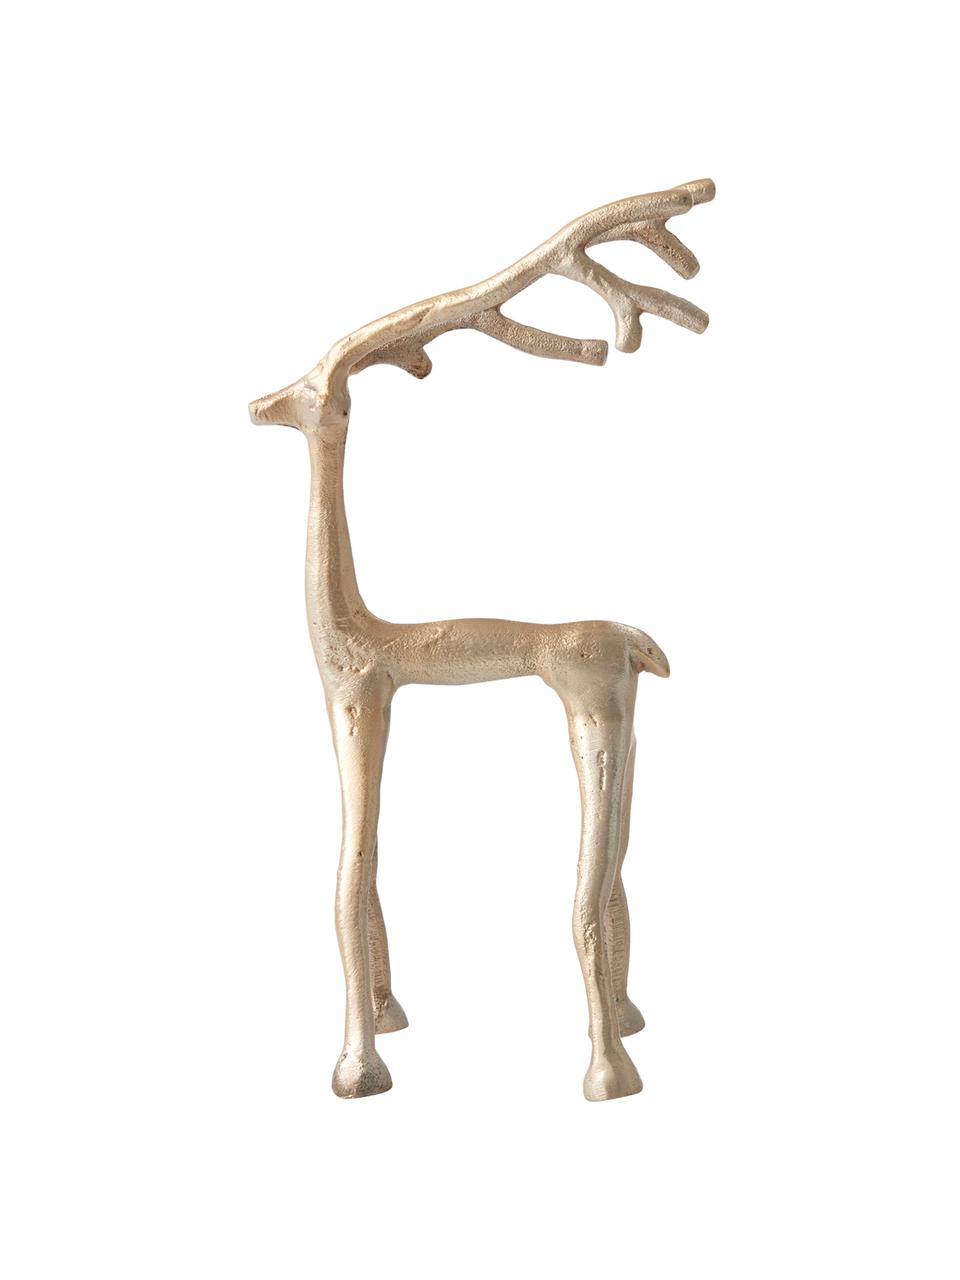 Dekoracja Marley Reindeer, Aluminium powlekane, Odcienie mosiądzu, S 14 x W 27 cm